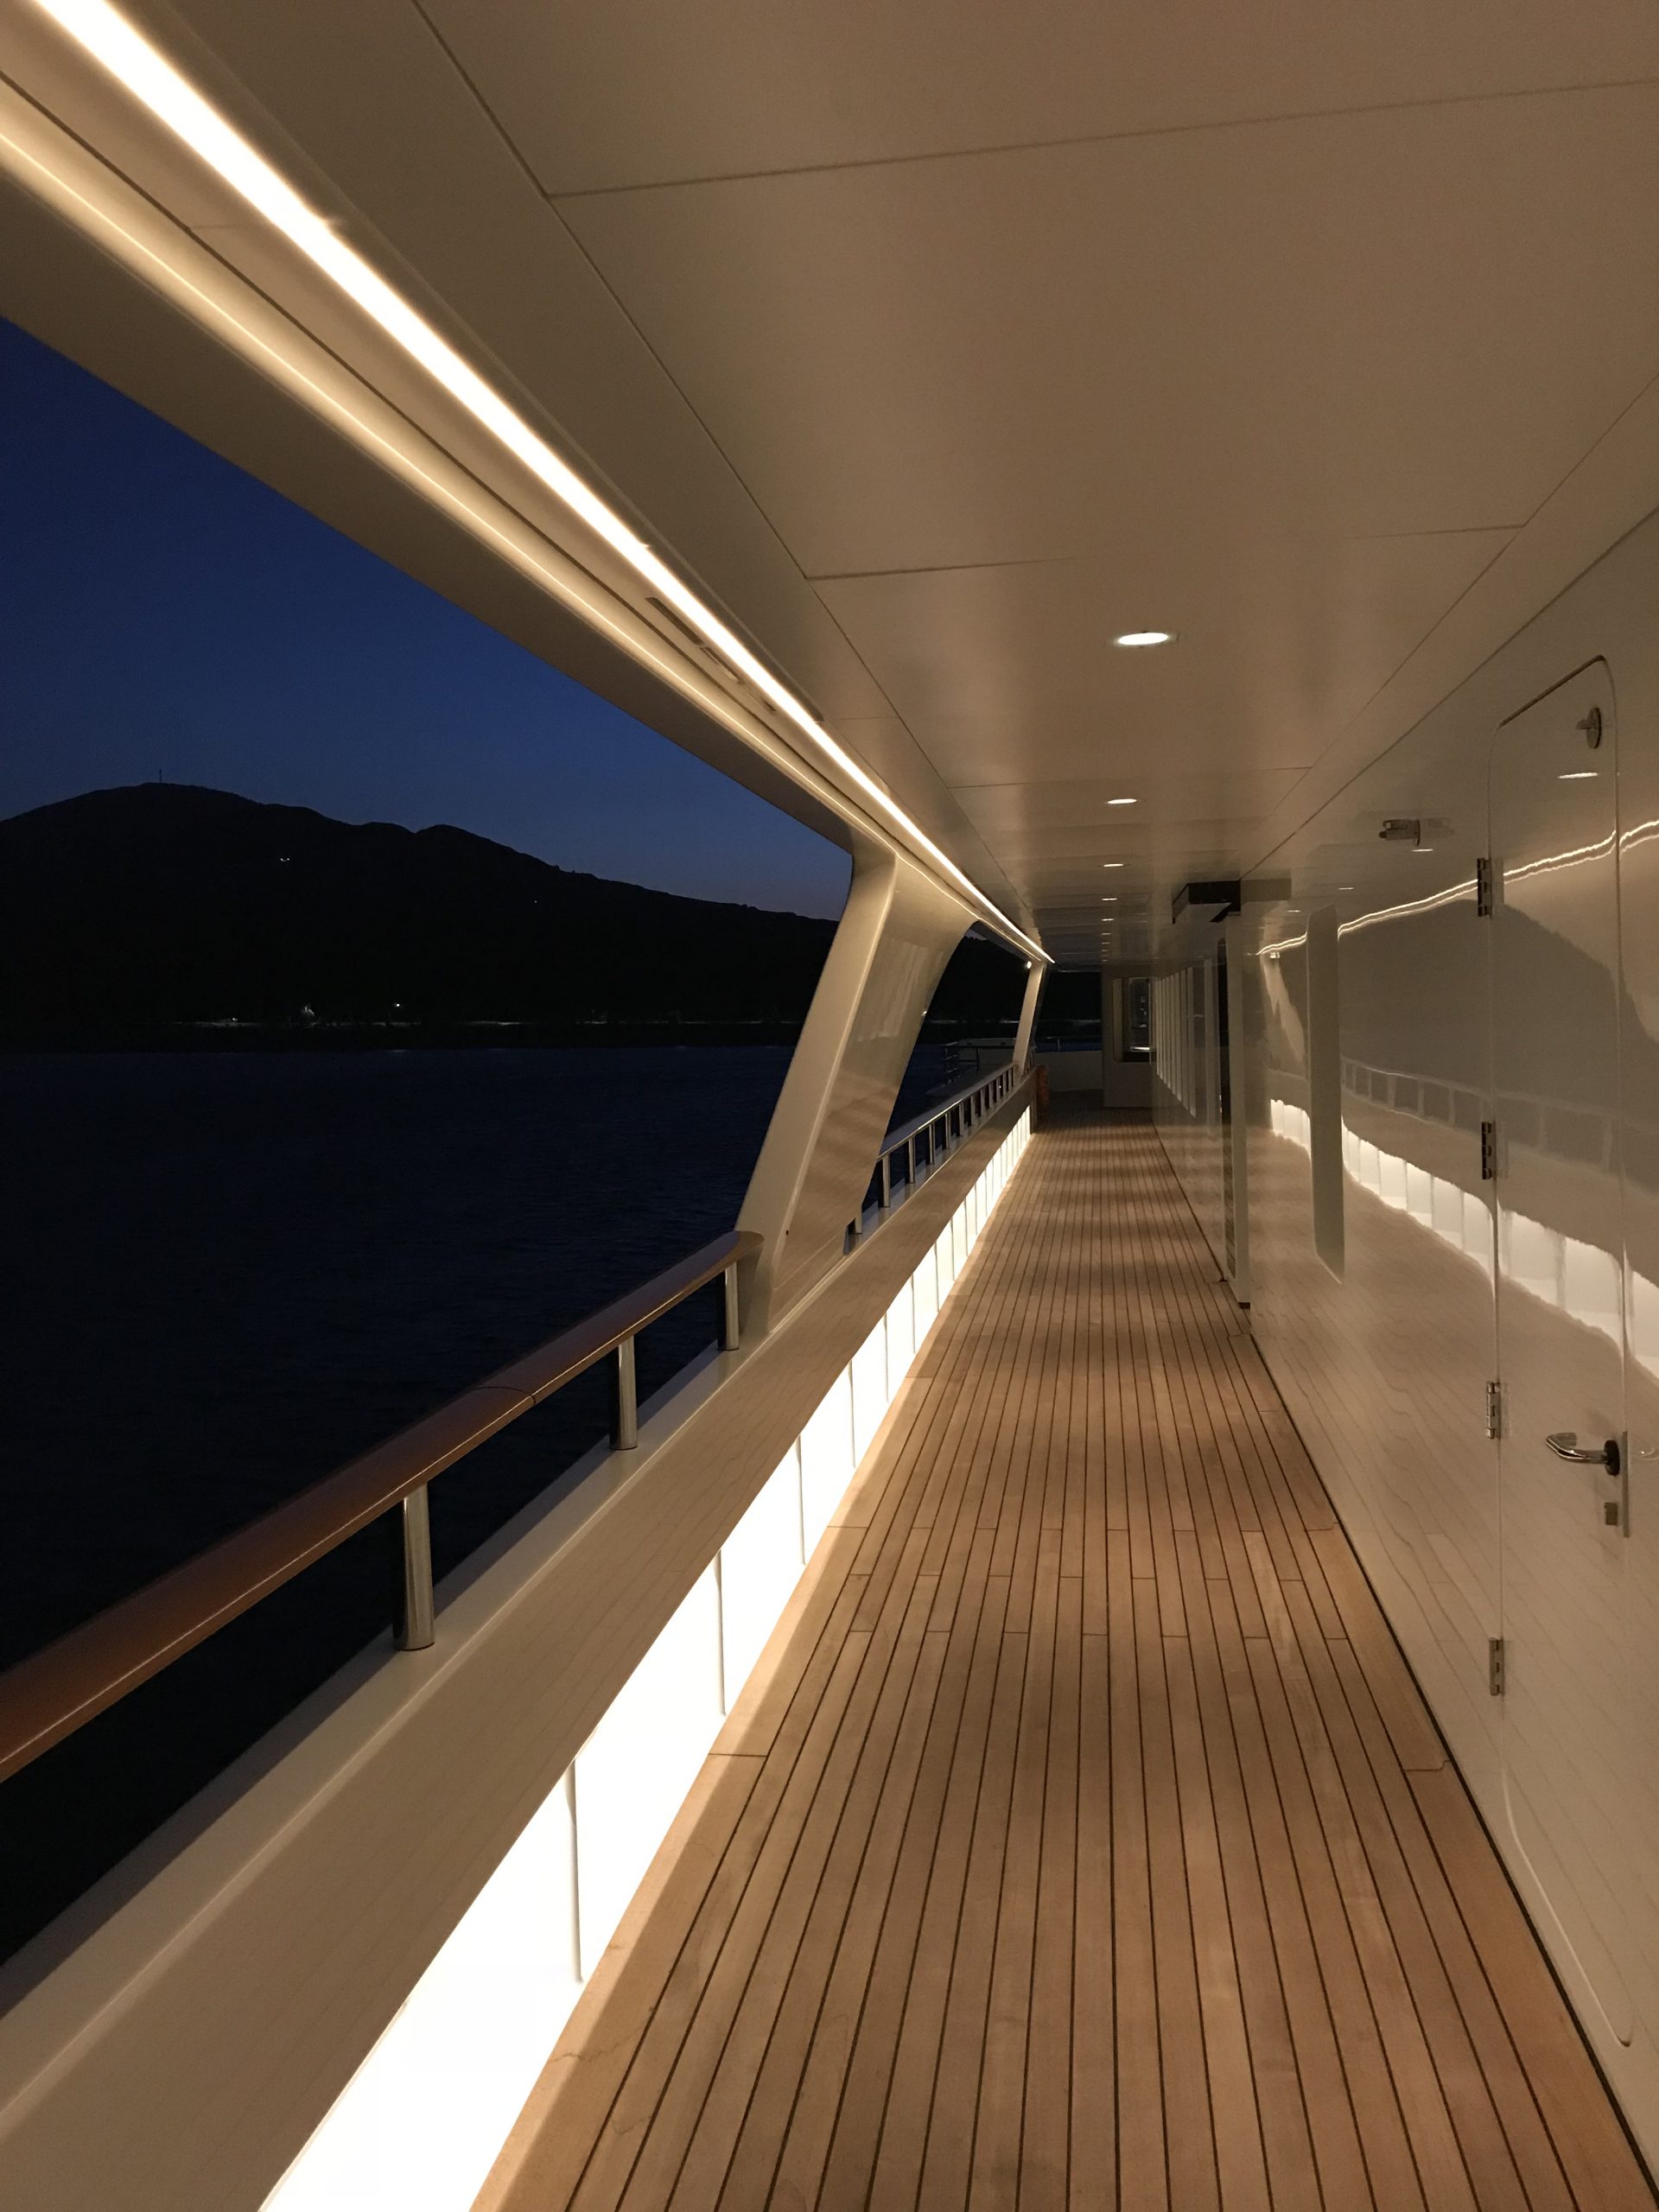 Motor Yacht Dream Outside deck promenade